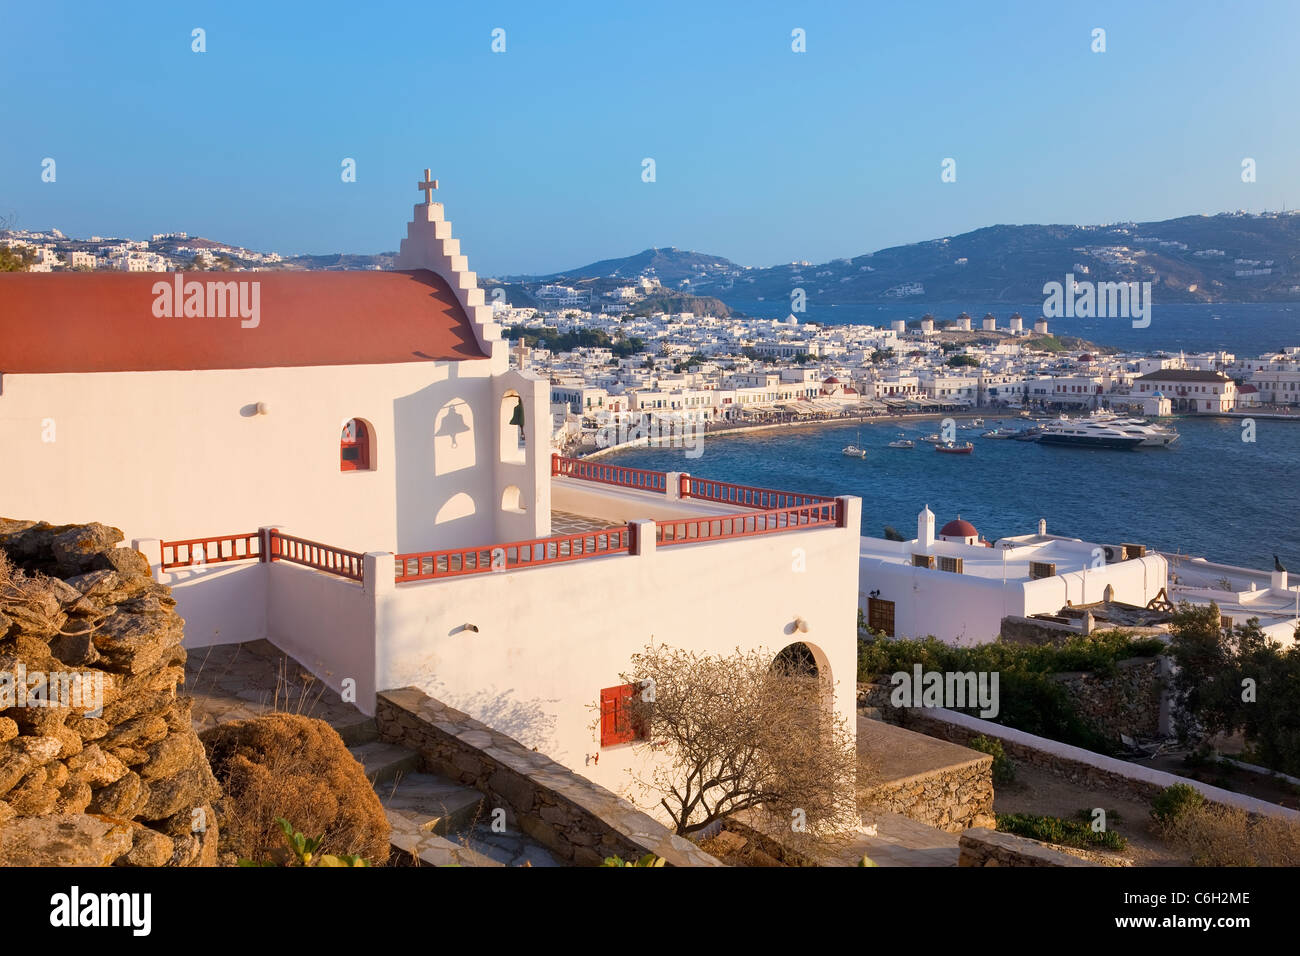 Vista in elevazione oltre il porto e la città vecchia, Mykonos (Hora), Isole Cicladi Grecia, Europa Foto Stock